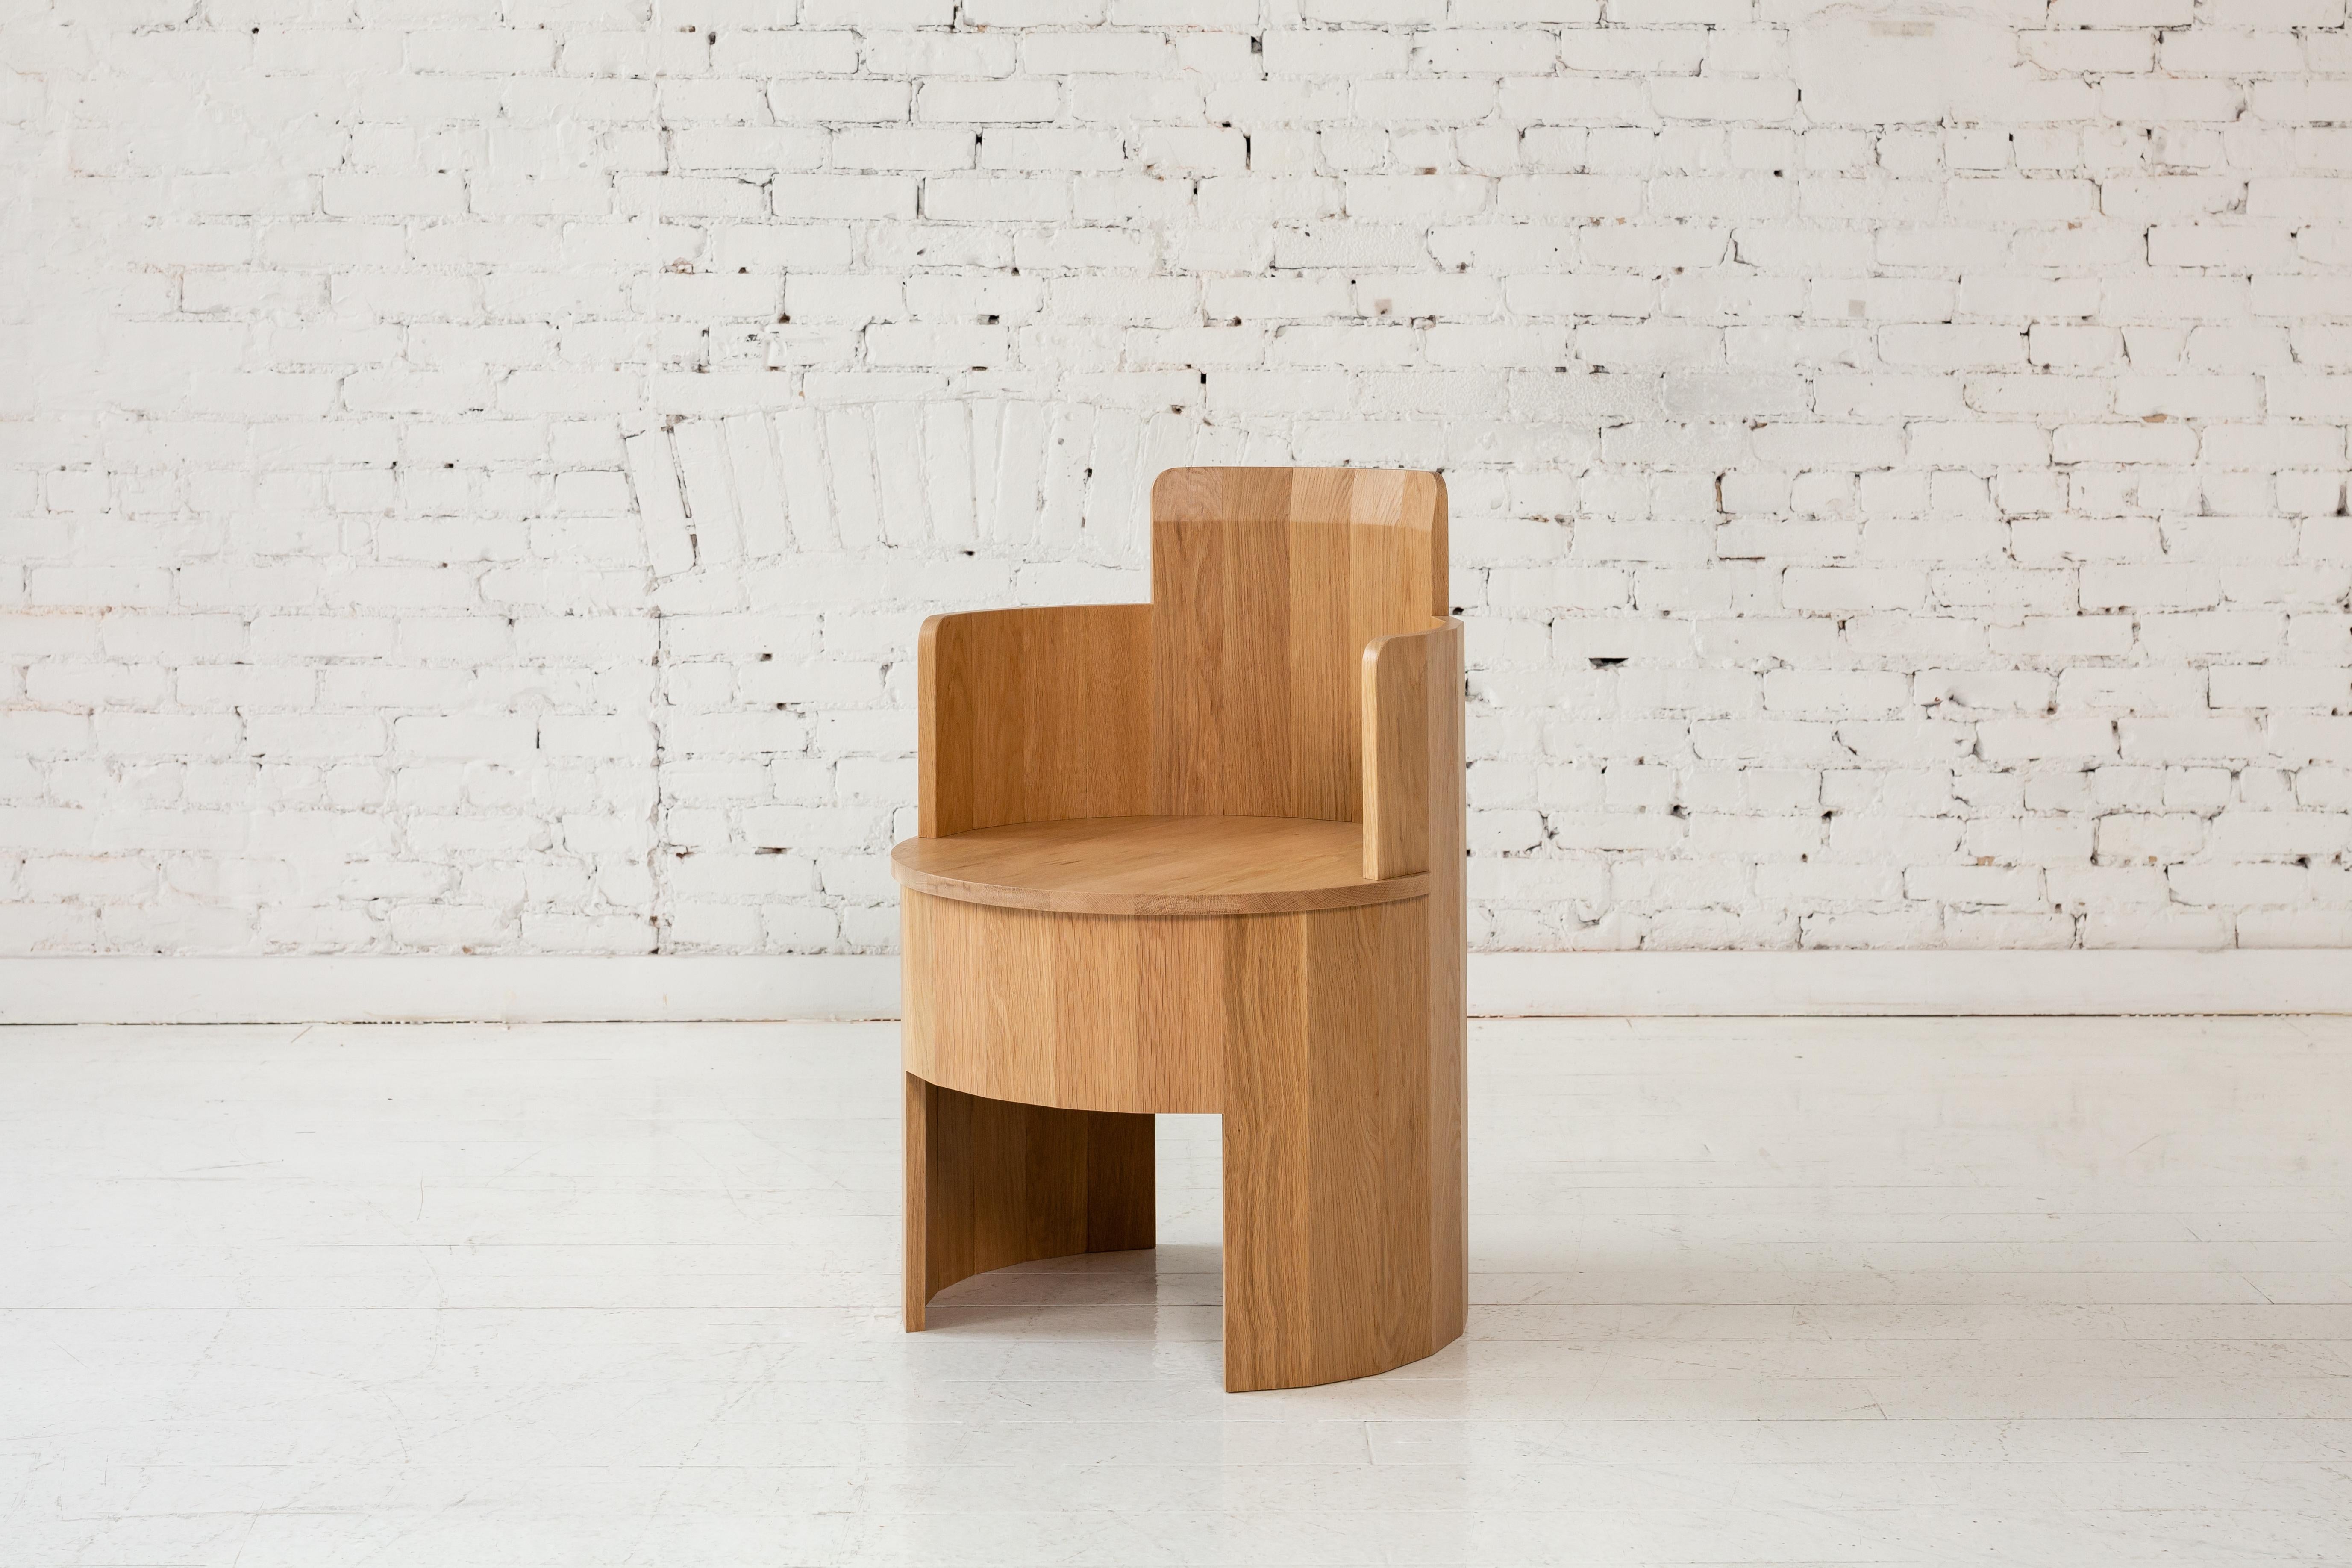 Dieser Beistellstuhl aus Holz ist Teil der neuen Cooperage Dining Collection'S. Jedes Stück weist große, facettierte, runde Elemente auf, die mit ihrem Namensgeber auf das traditionelle Küferhandwerk verweisen, das Fässer herstellt.

Der